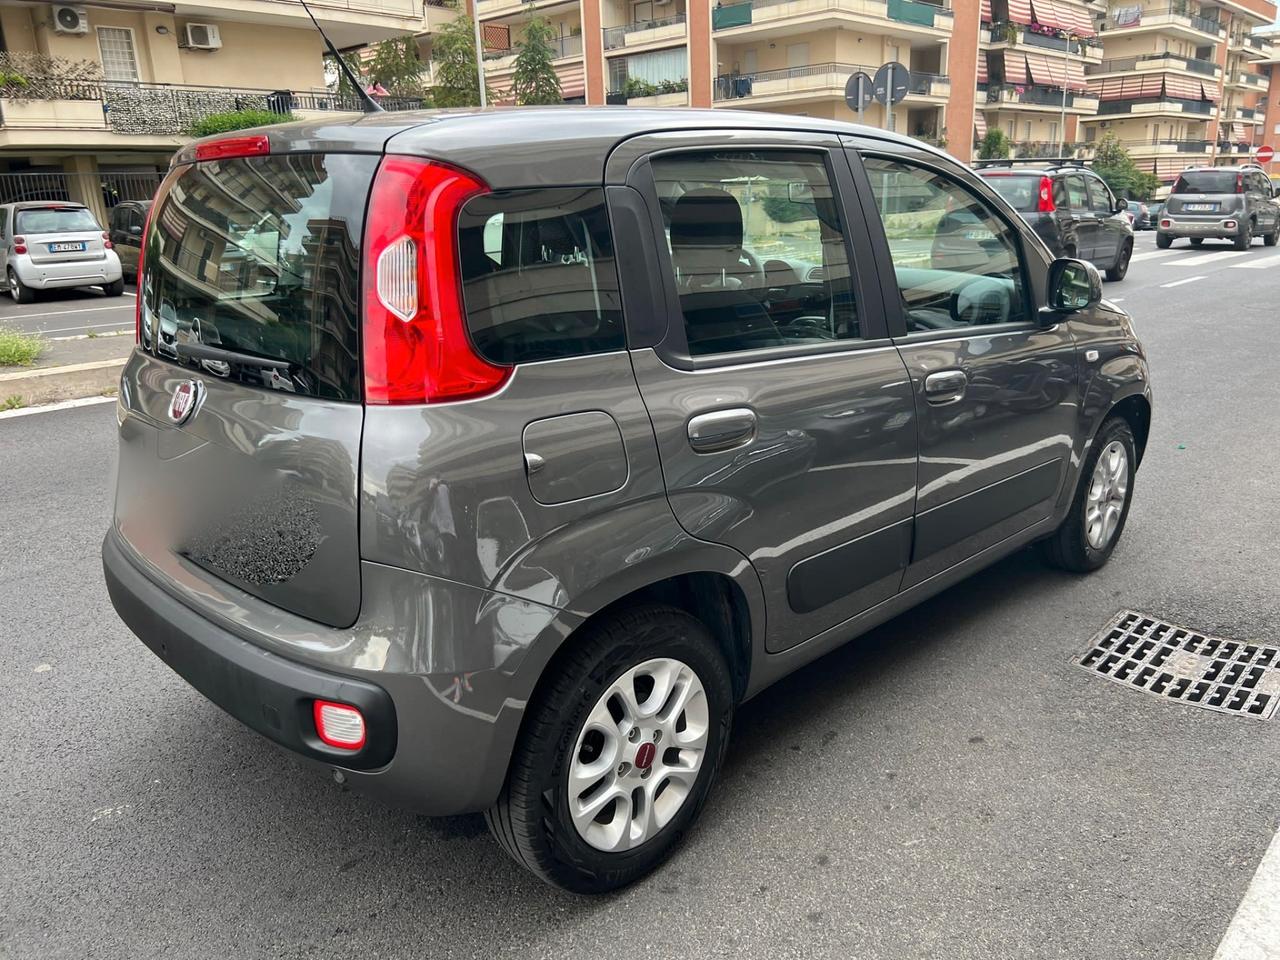 Fiat Panda 1.2 Lounge 2019